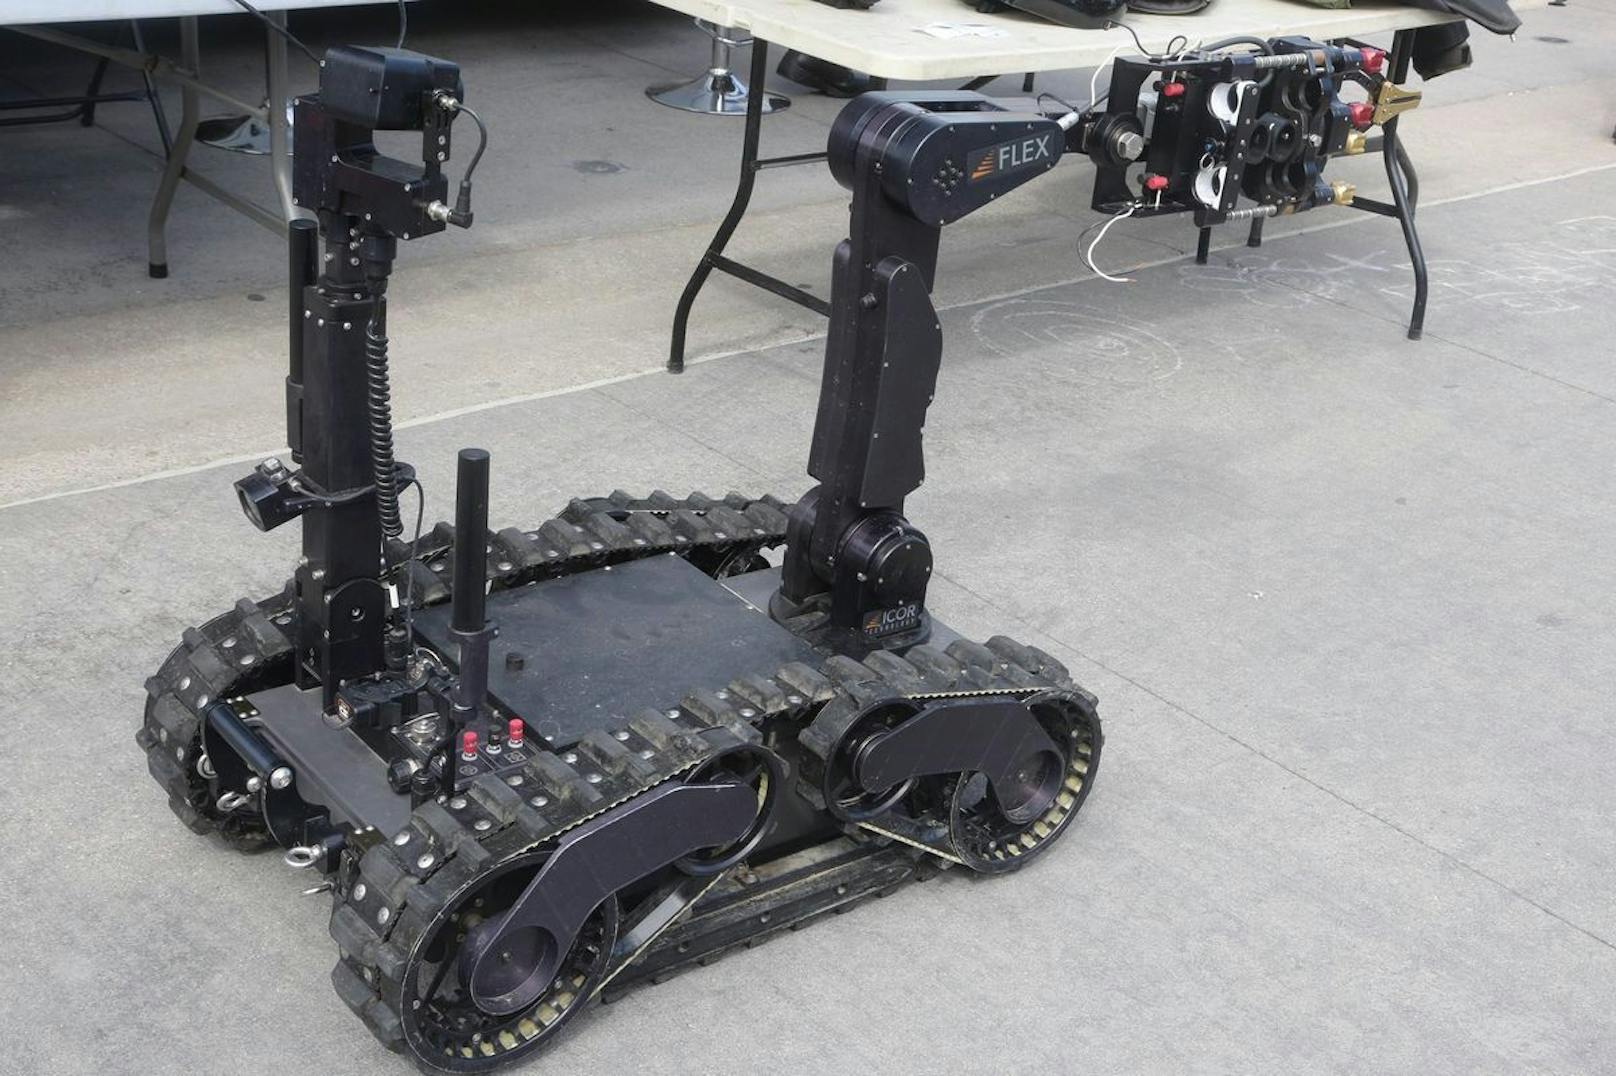 Polizei von San Francisco darf jetzt Roboter zum Töten einsetzen